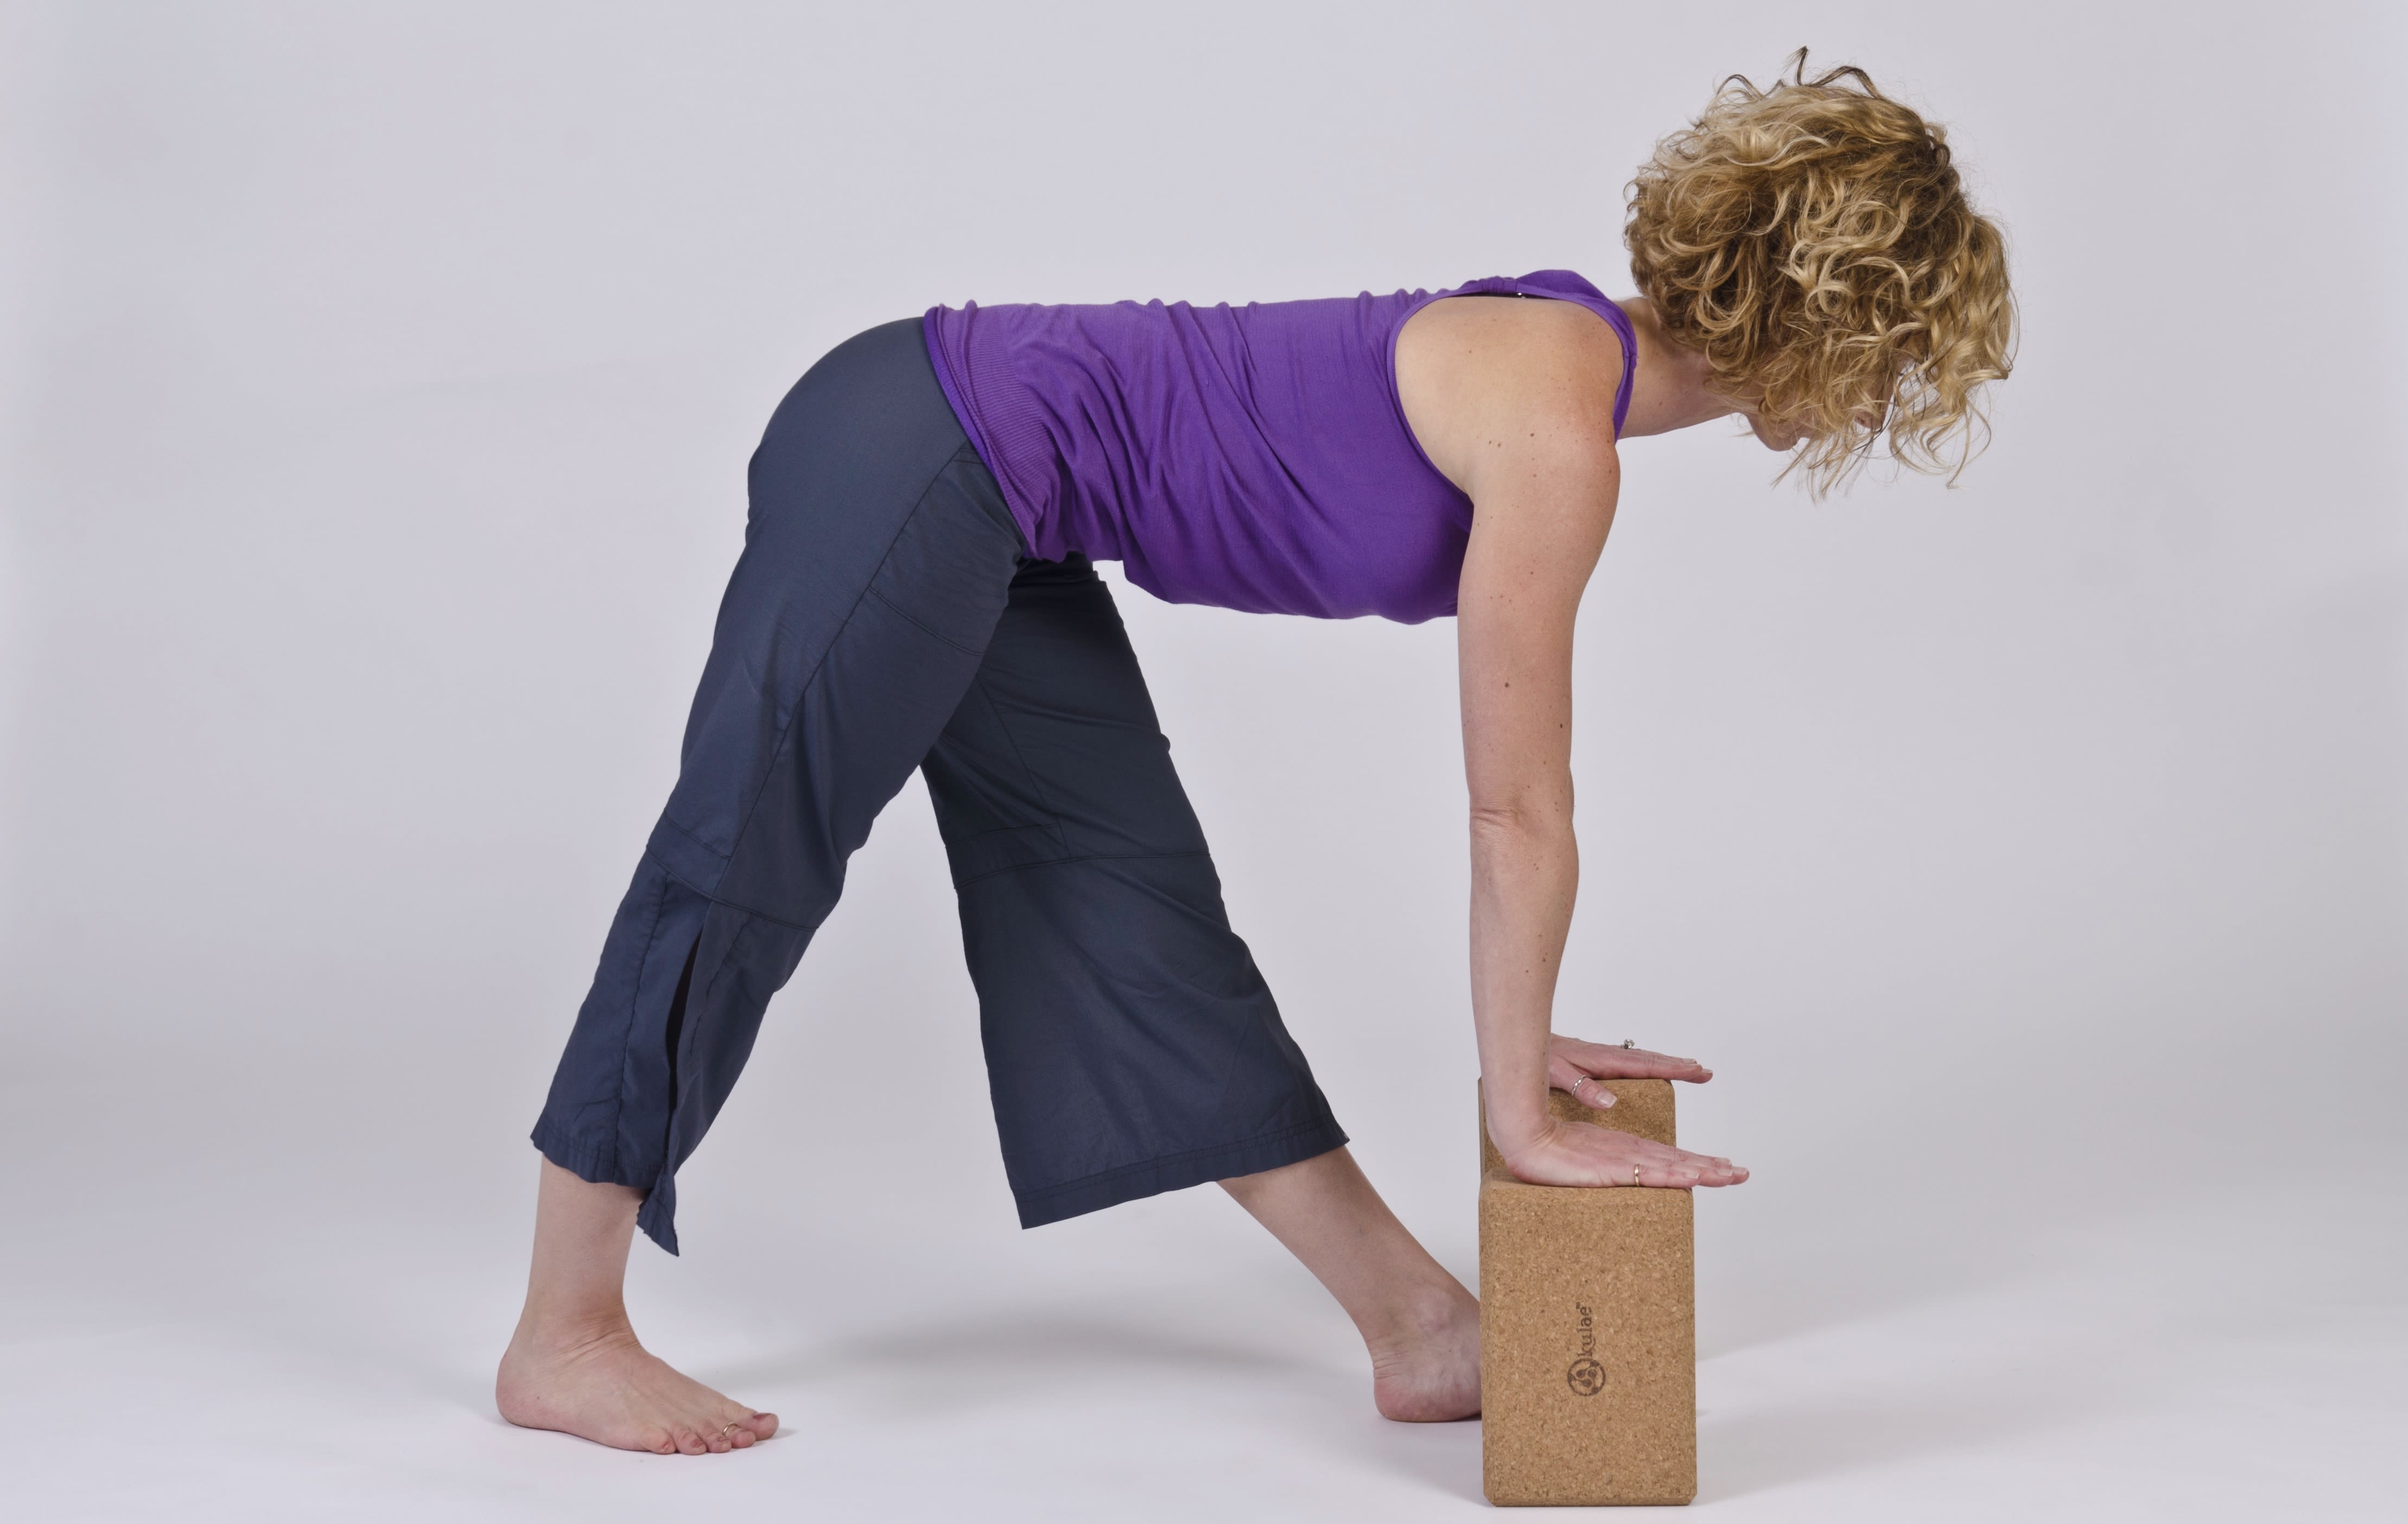 sciatic nerve yoga exercises